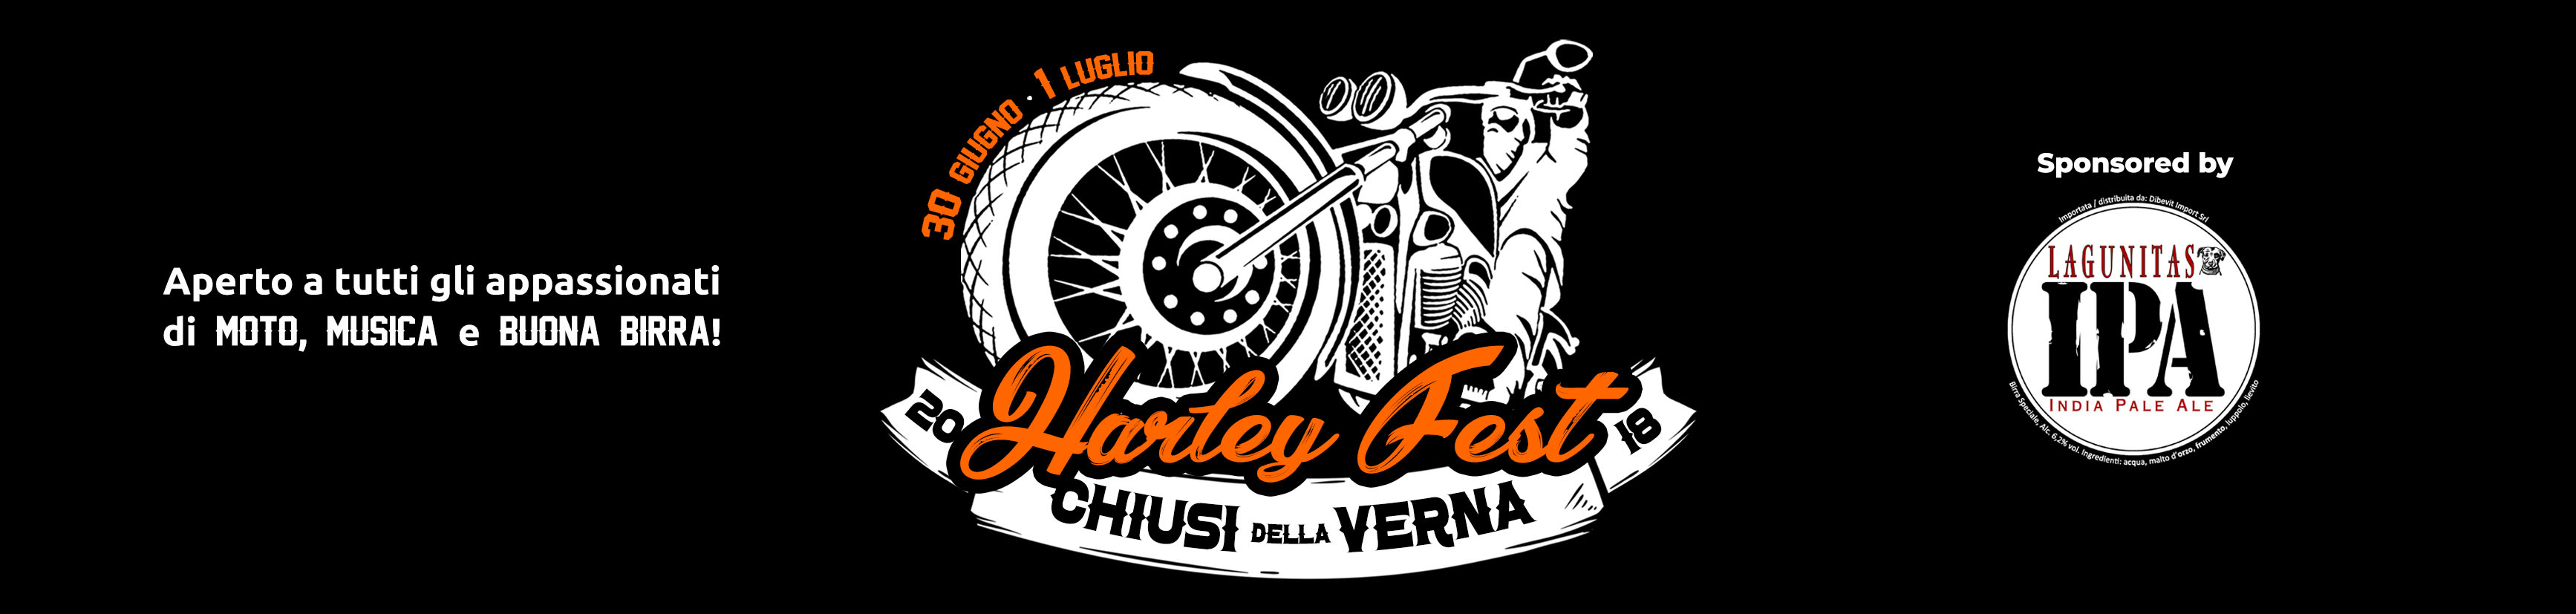 Countdown per l’Harley Fest a Chiusi della Verna